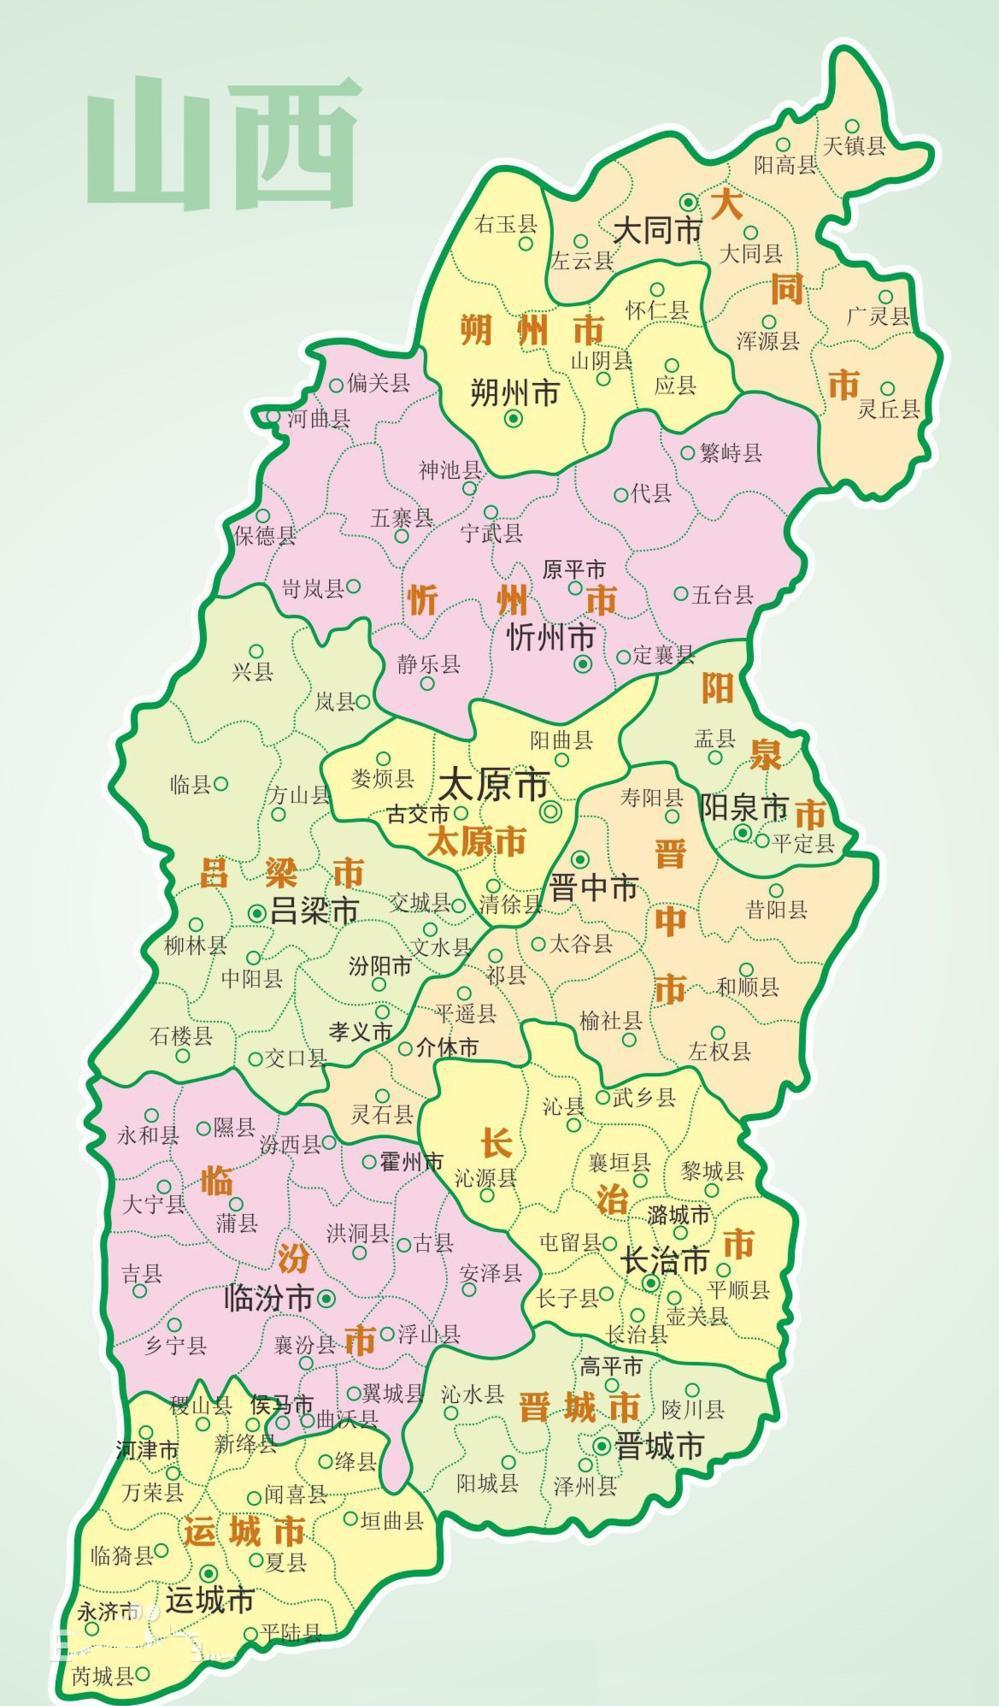 明朝时期, 山西省下辖4府20州77县, 您的家乡属于哪里?